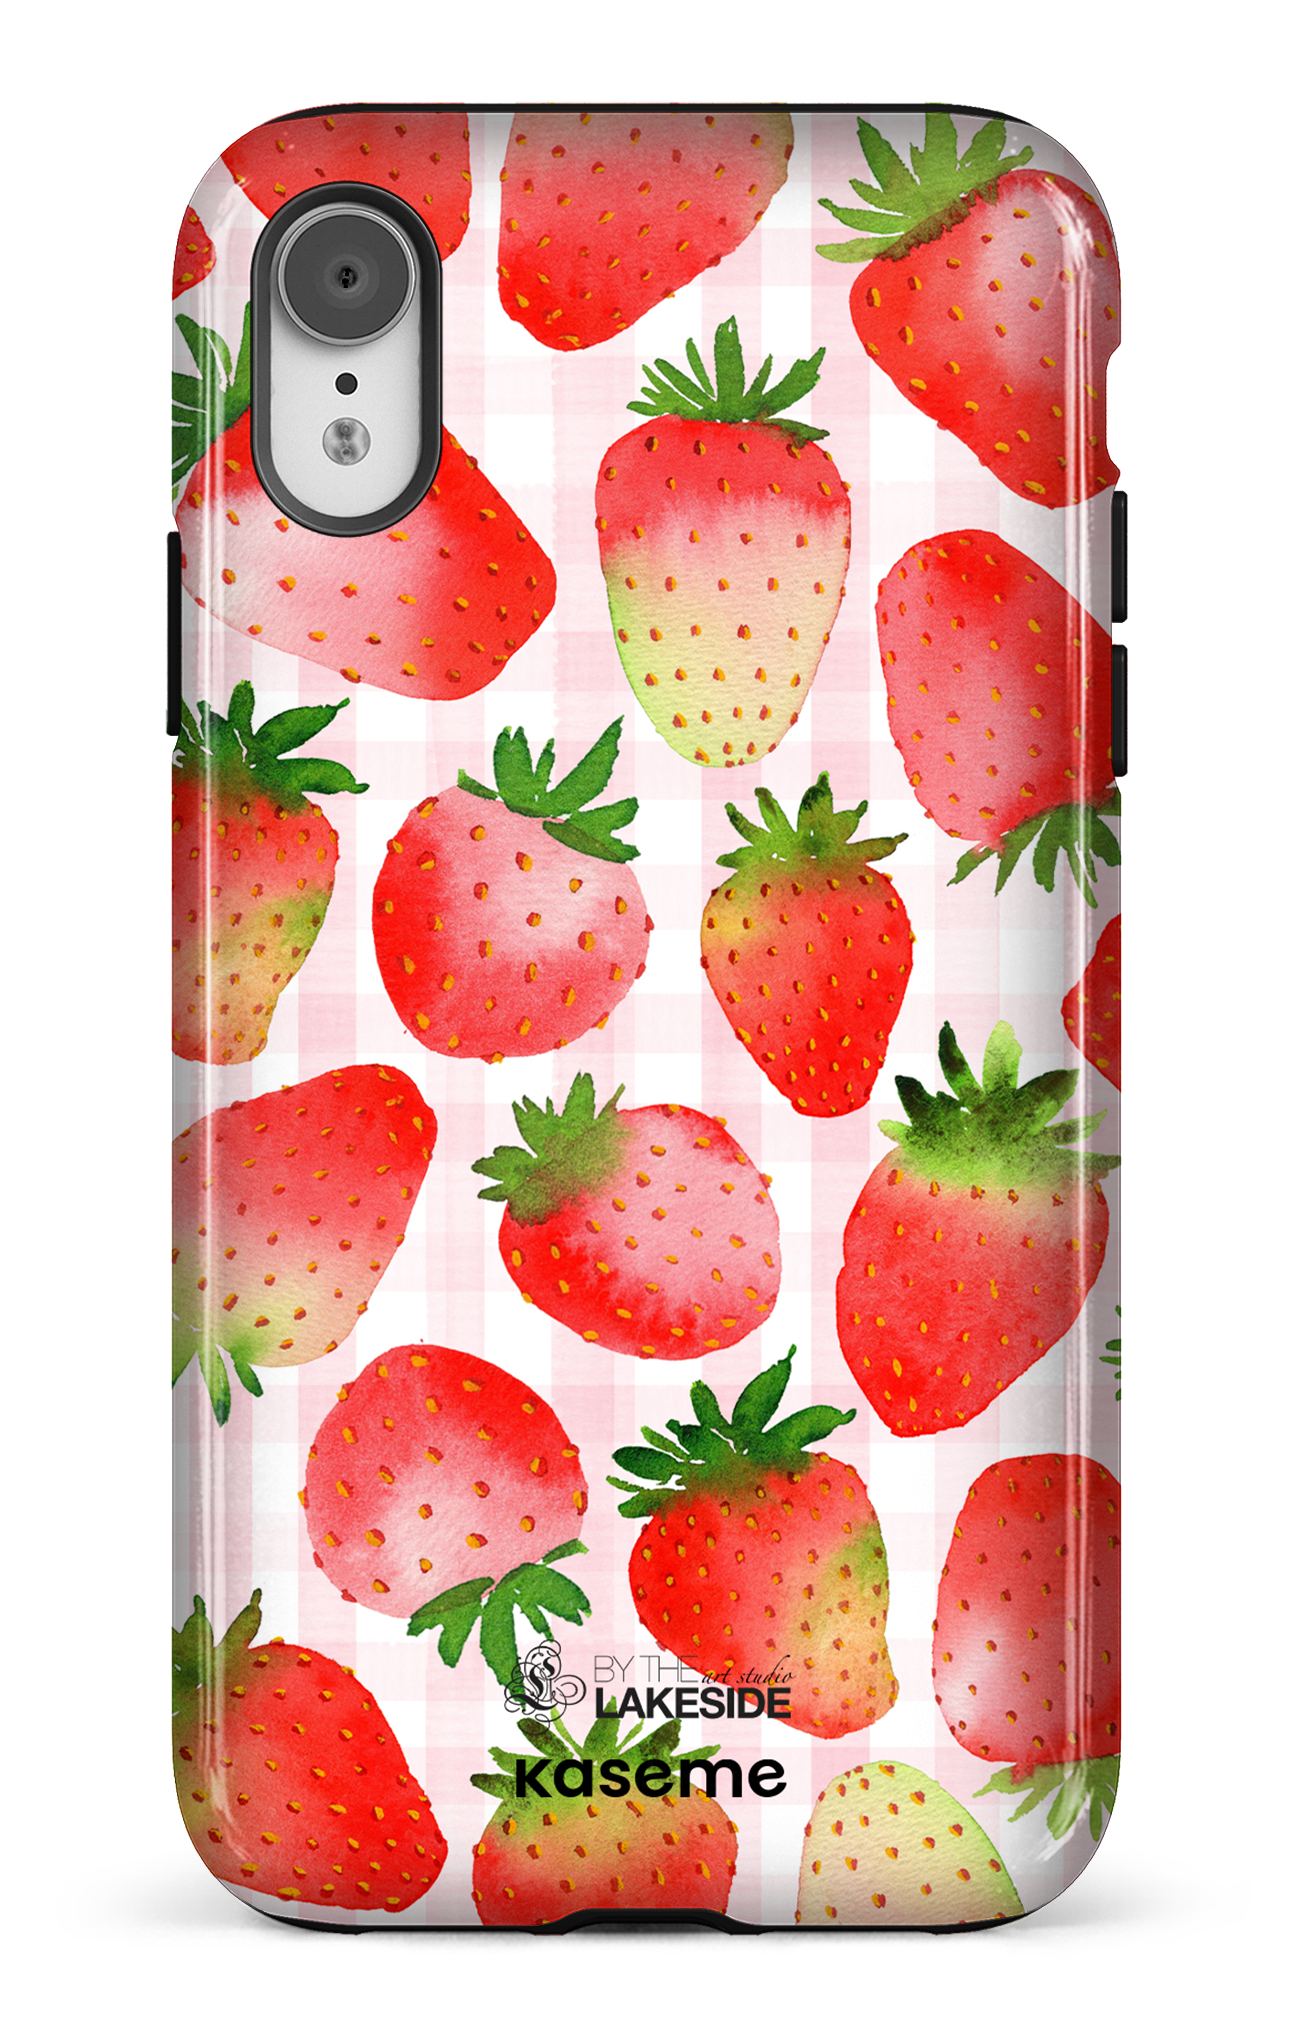 Strawberry Fields by Pooja Umrani - iPhone XR